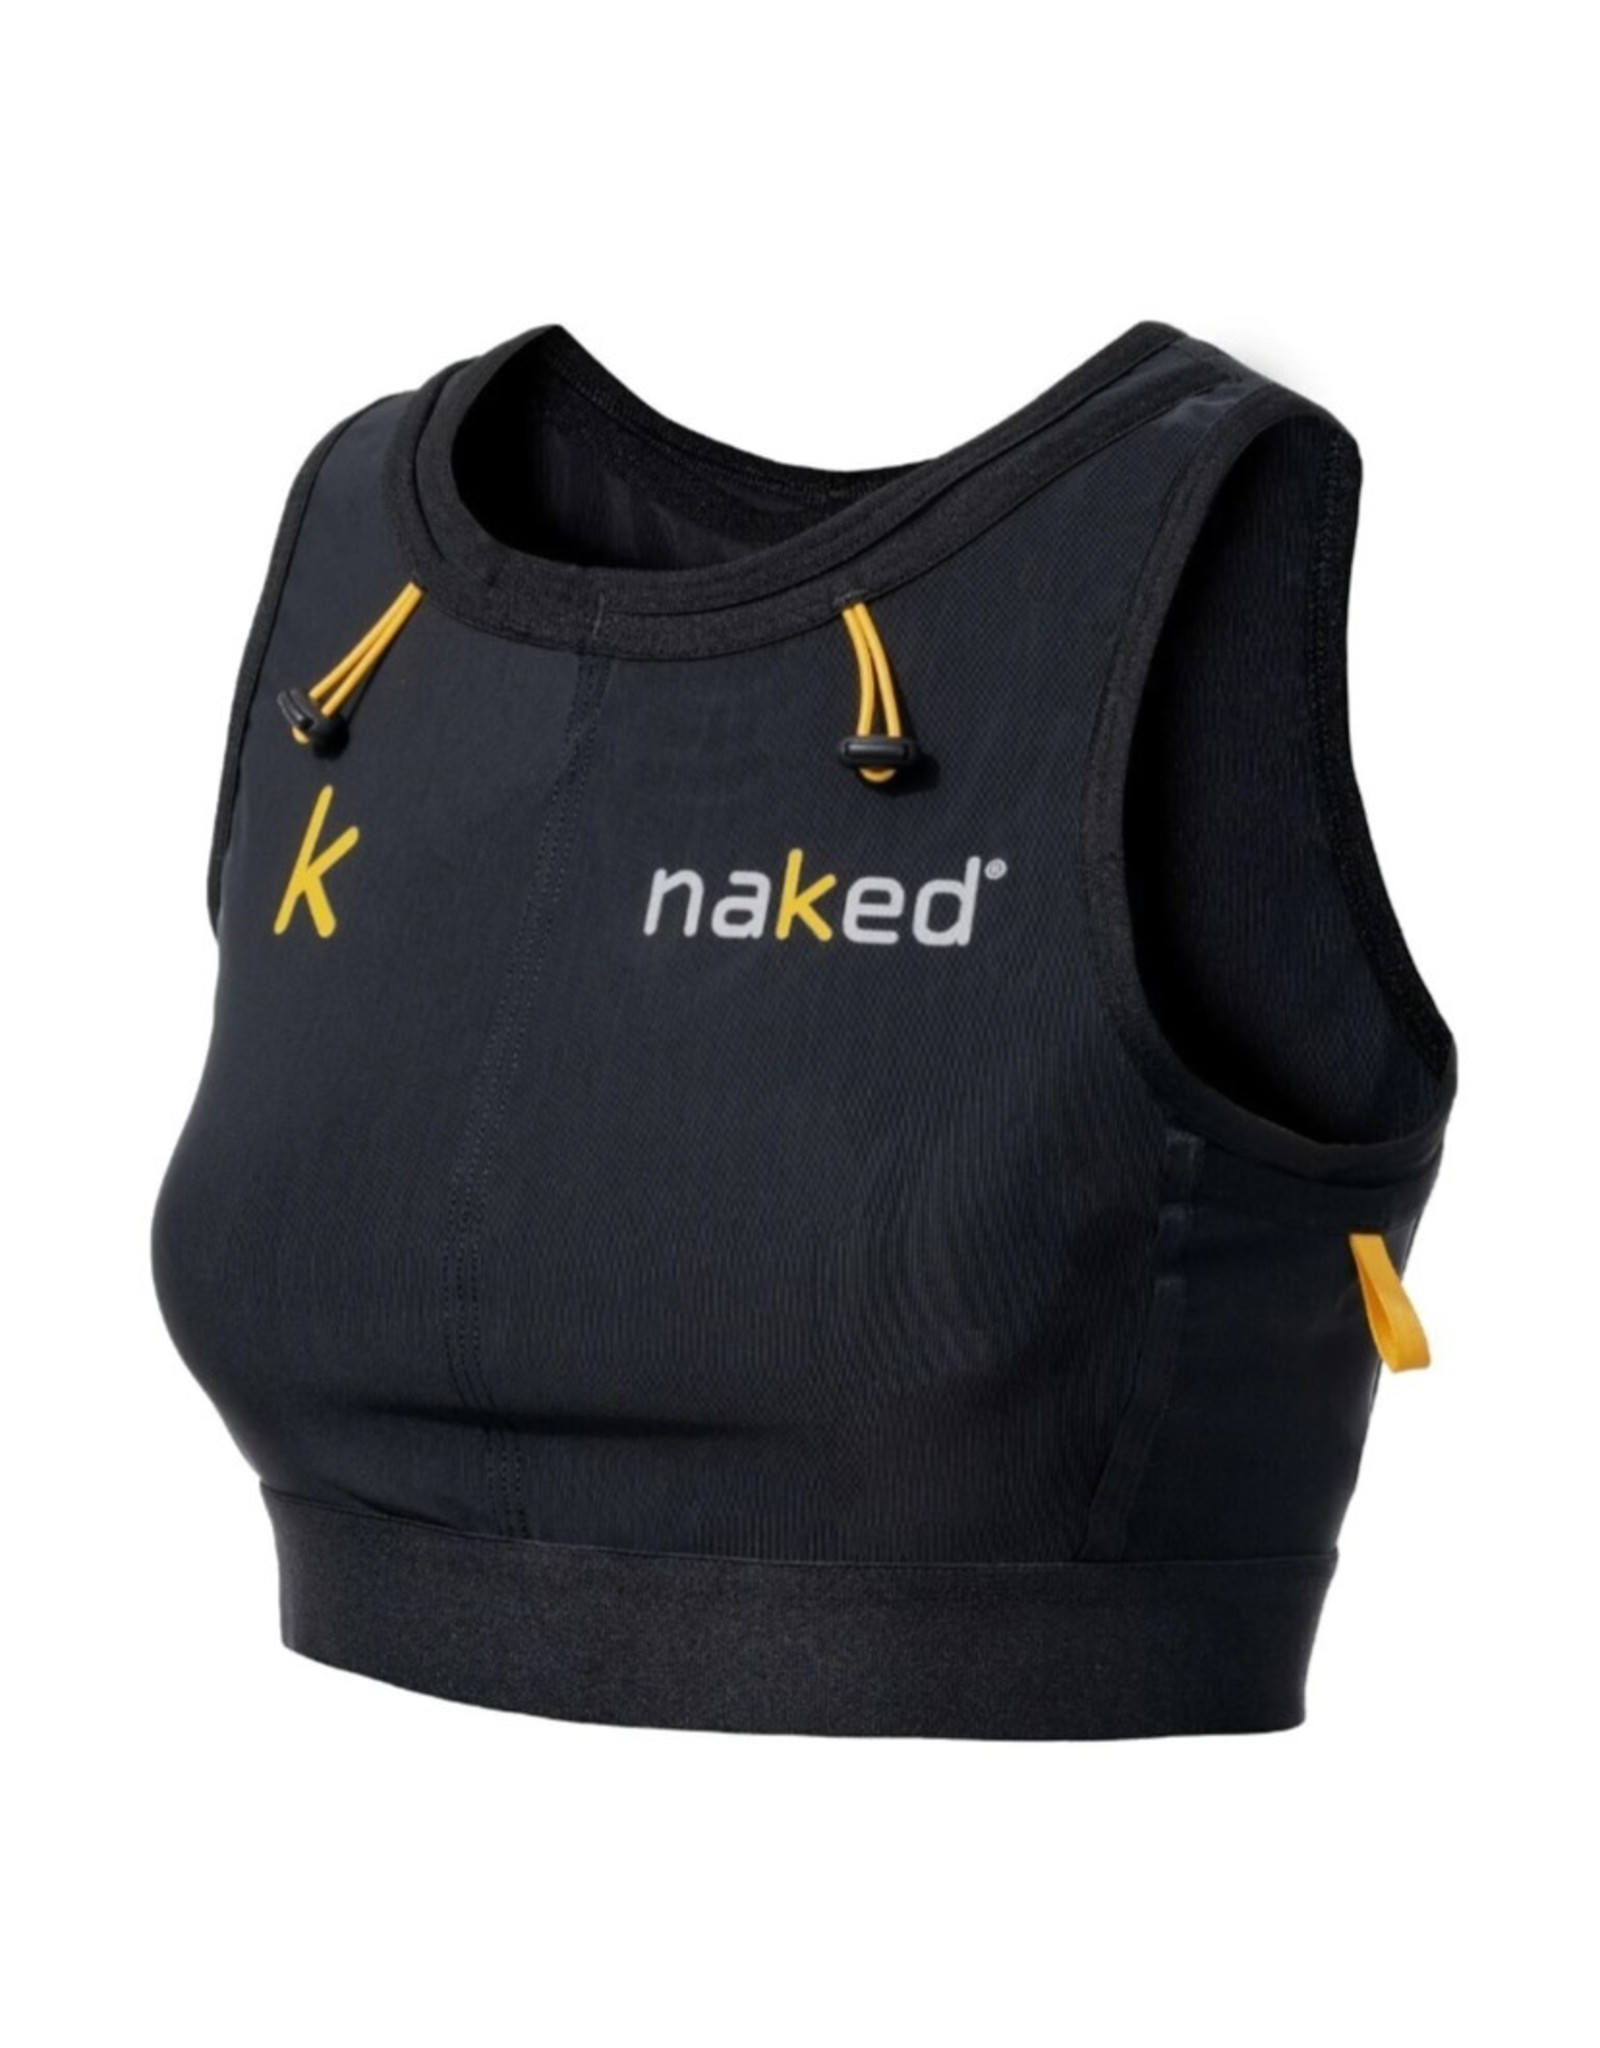 Naked Running Vest - Dames - Zwart